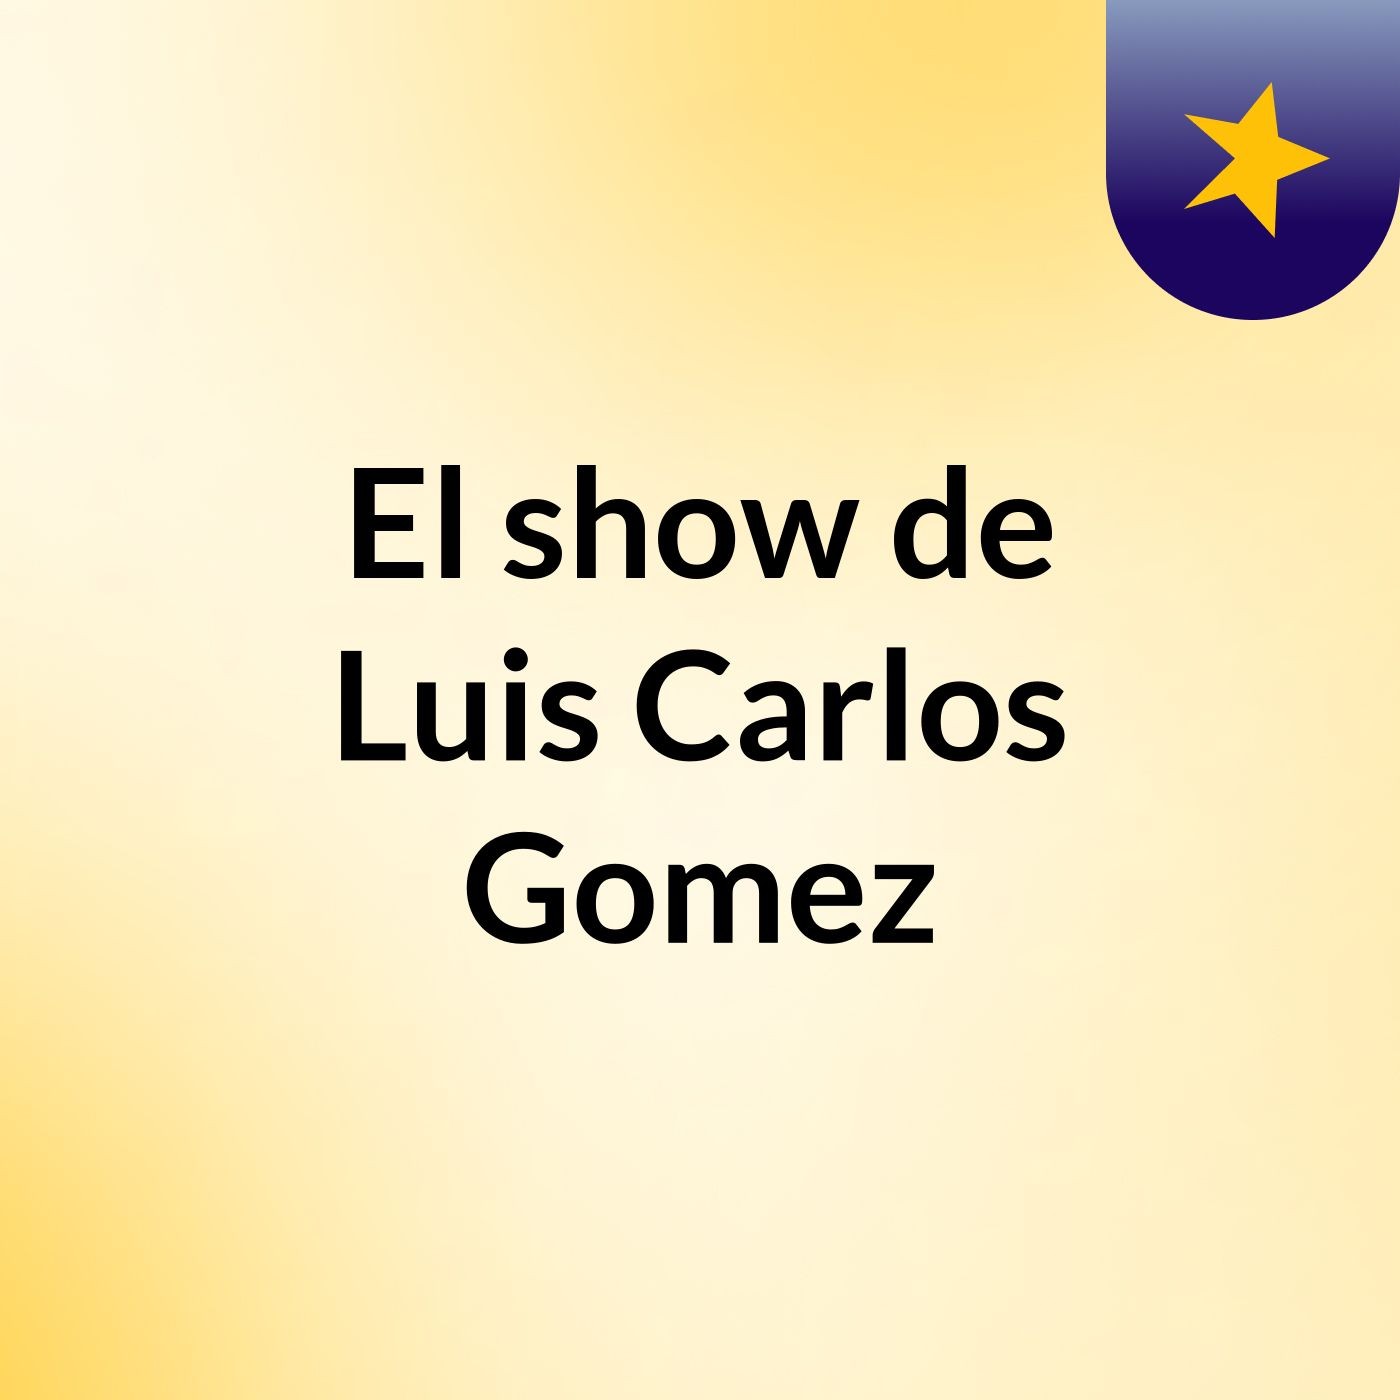 El show de Luis Carlos Gomez